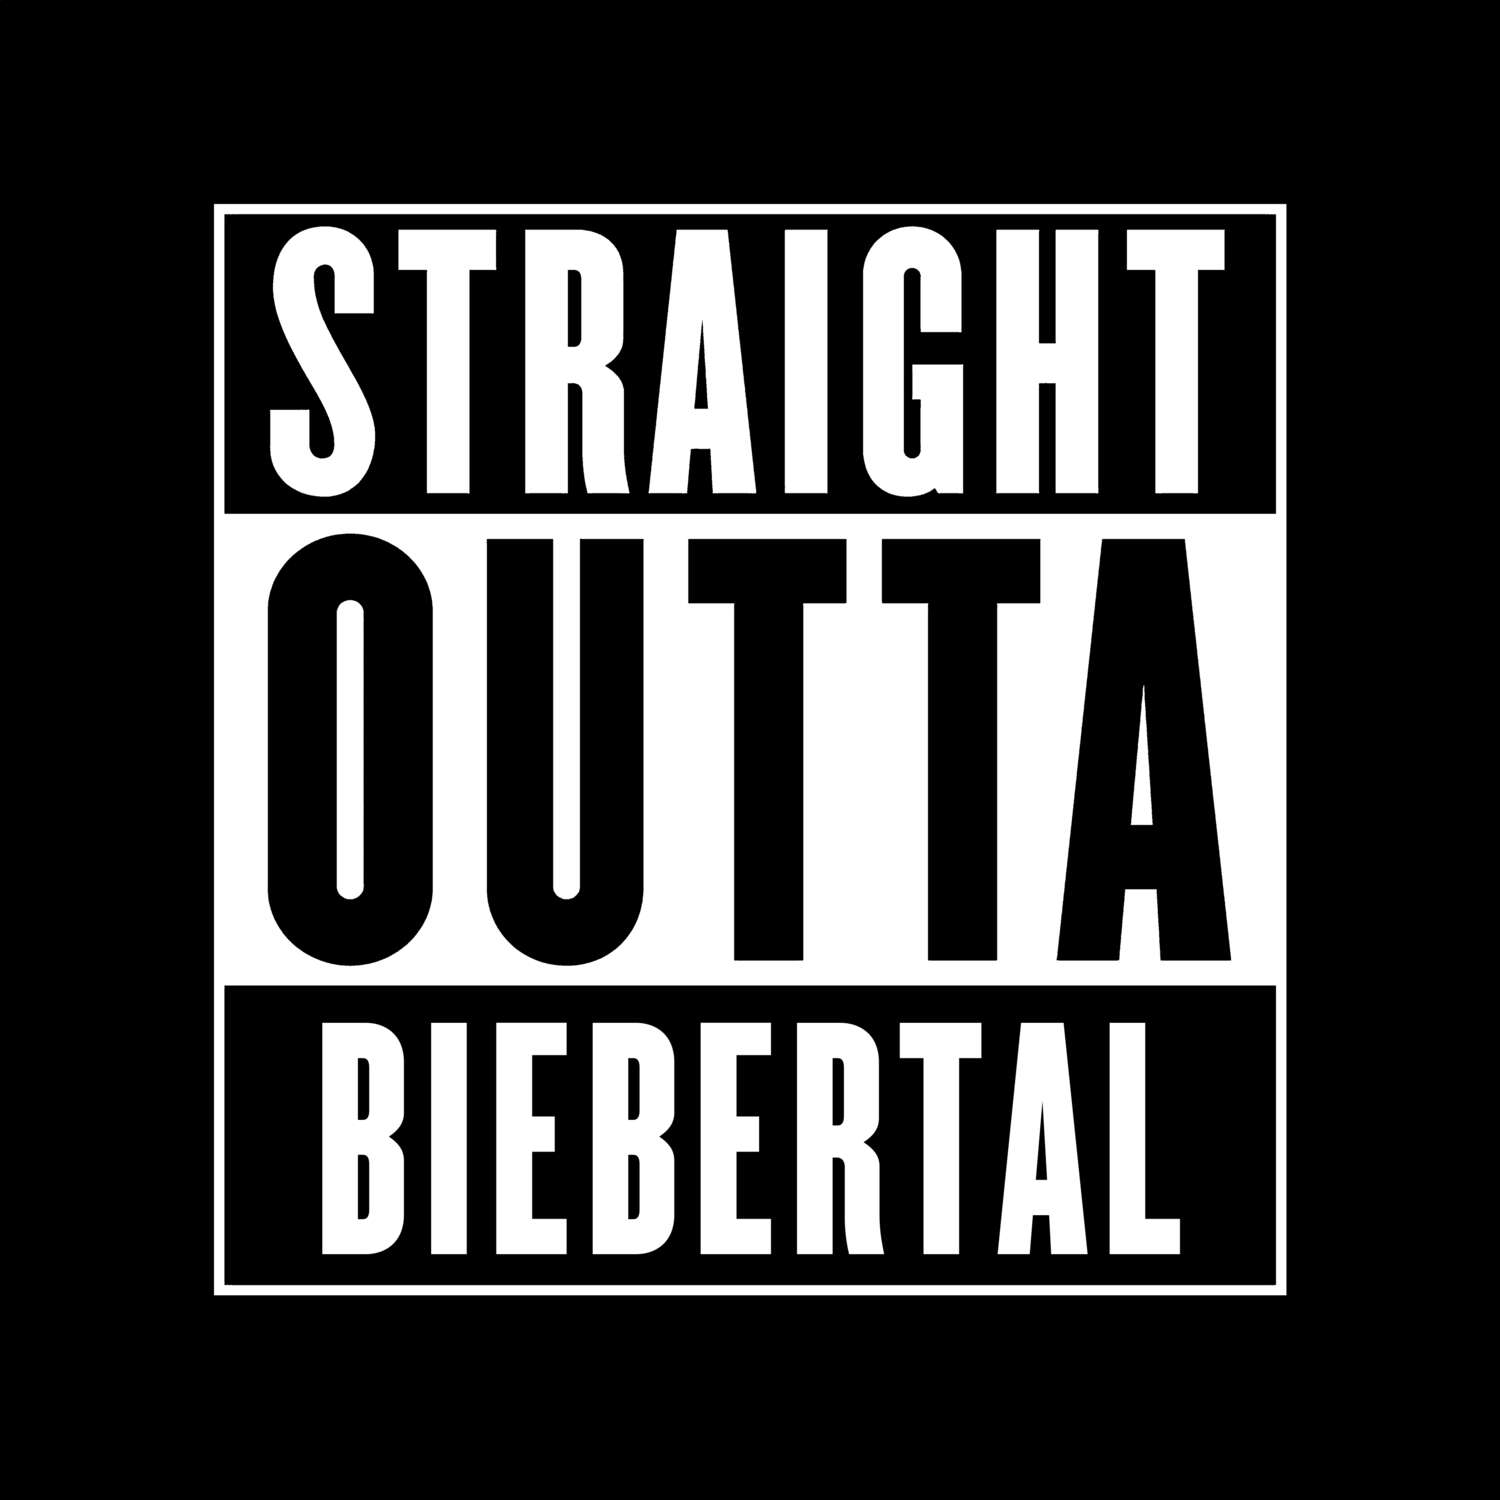 Biebertal T-Shirt »Straight Outta«